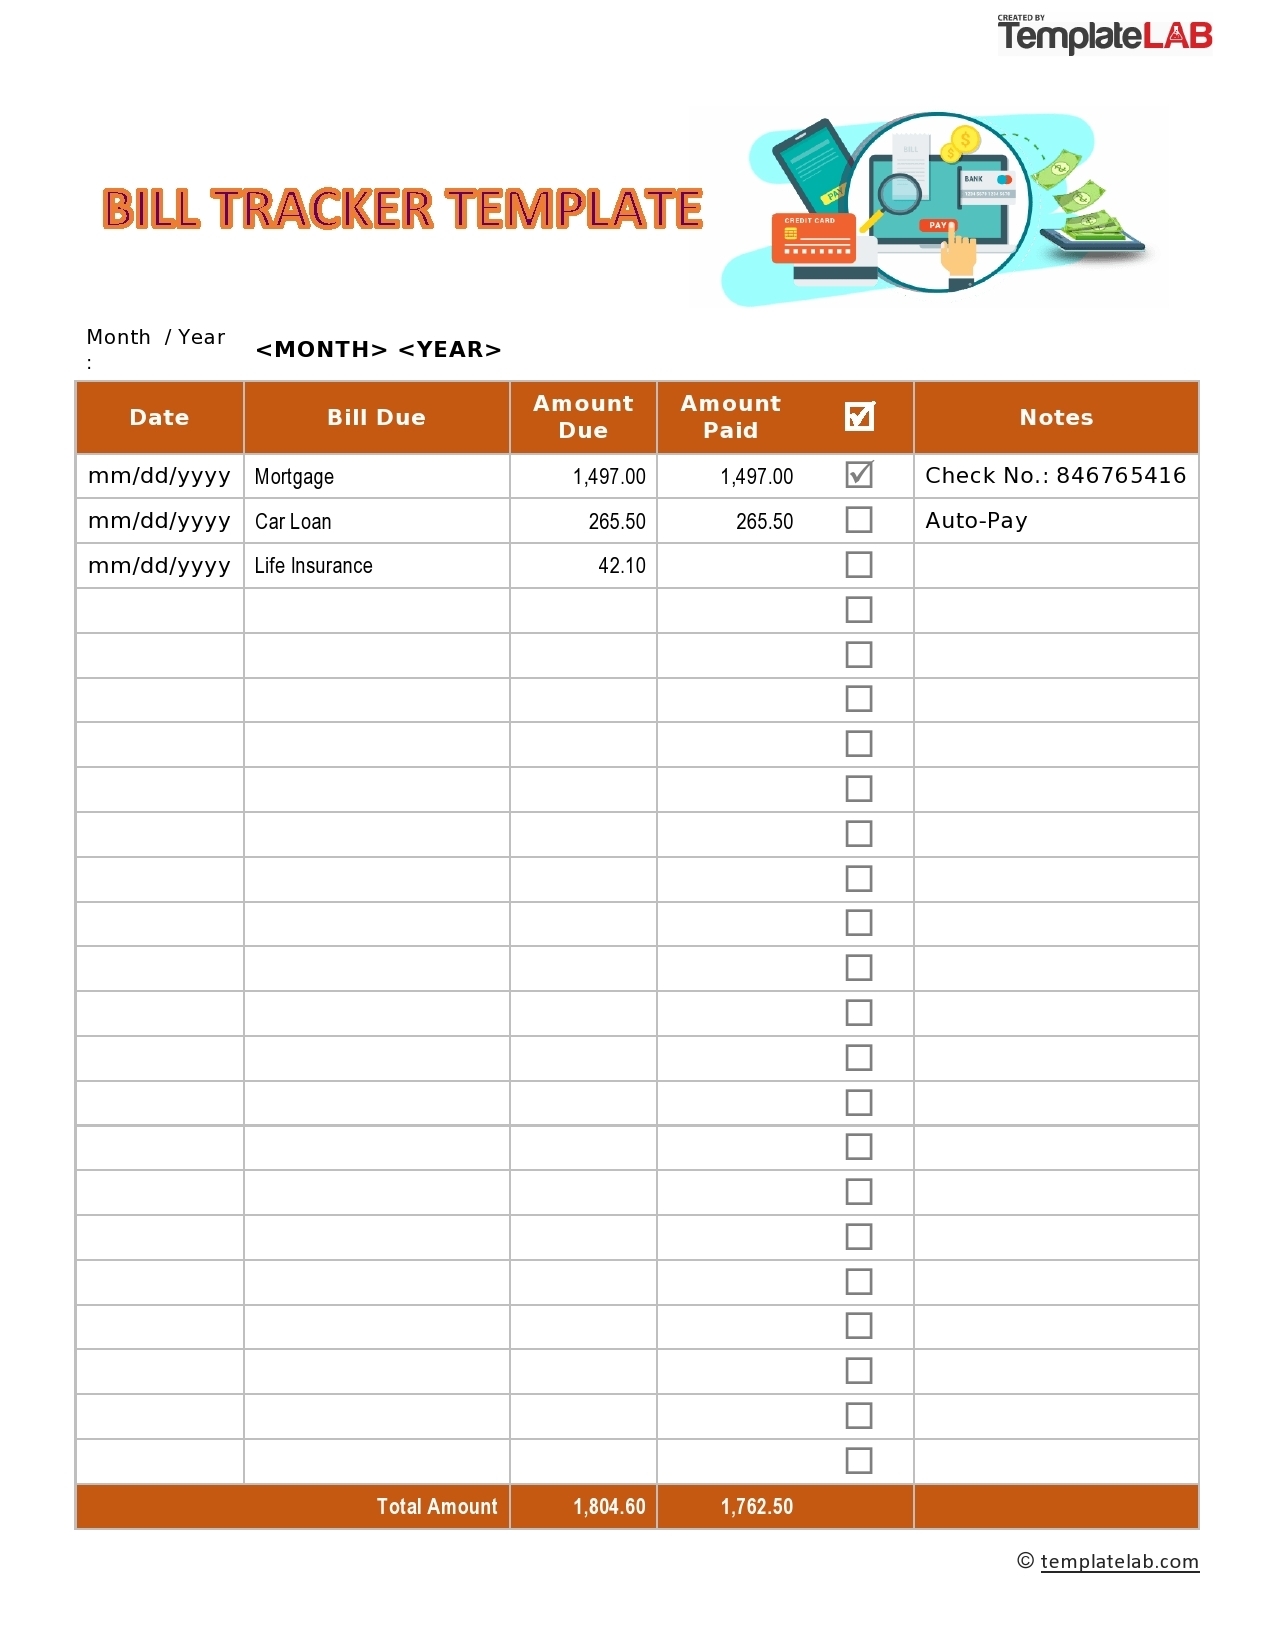 Bill Tracker Template Free